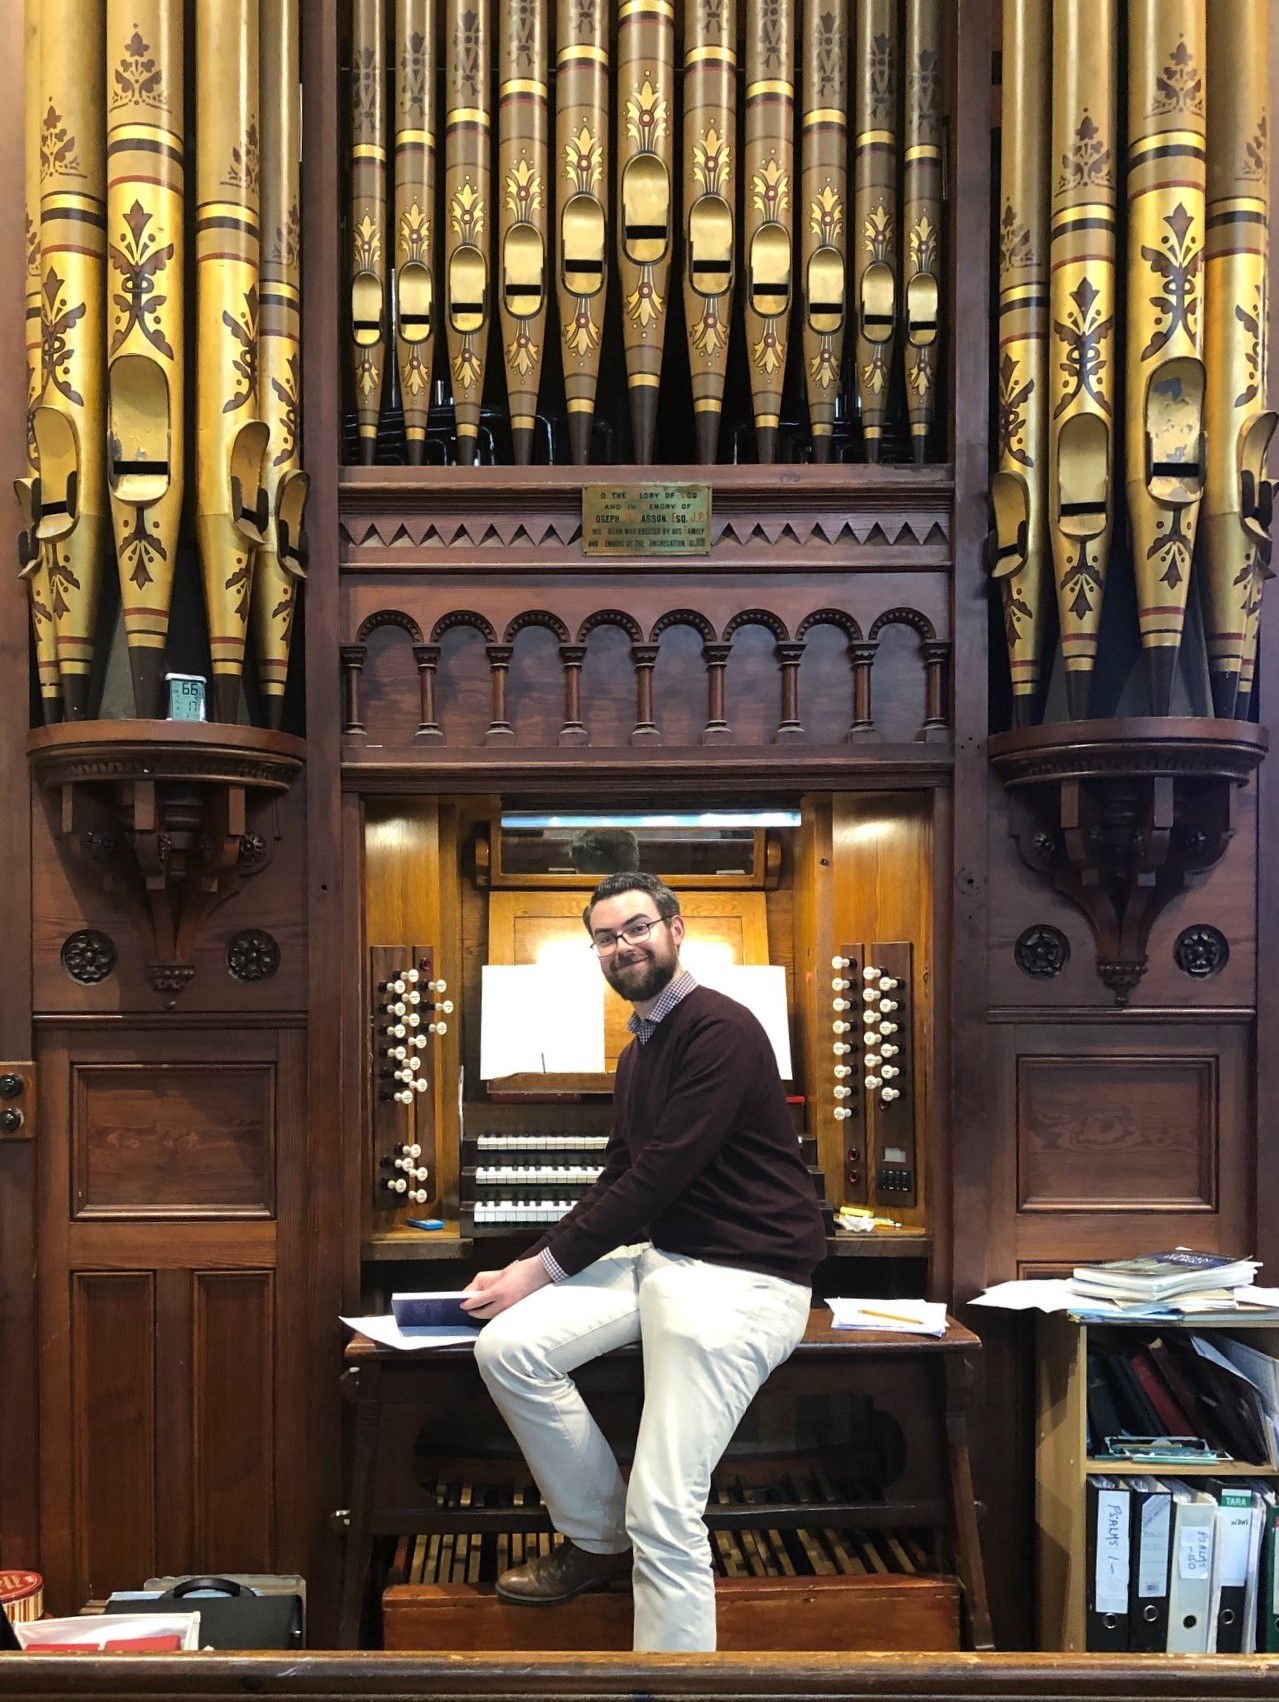 David O'Shea at the organ in Sandford.